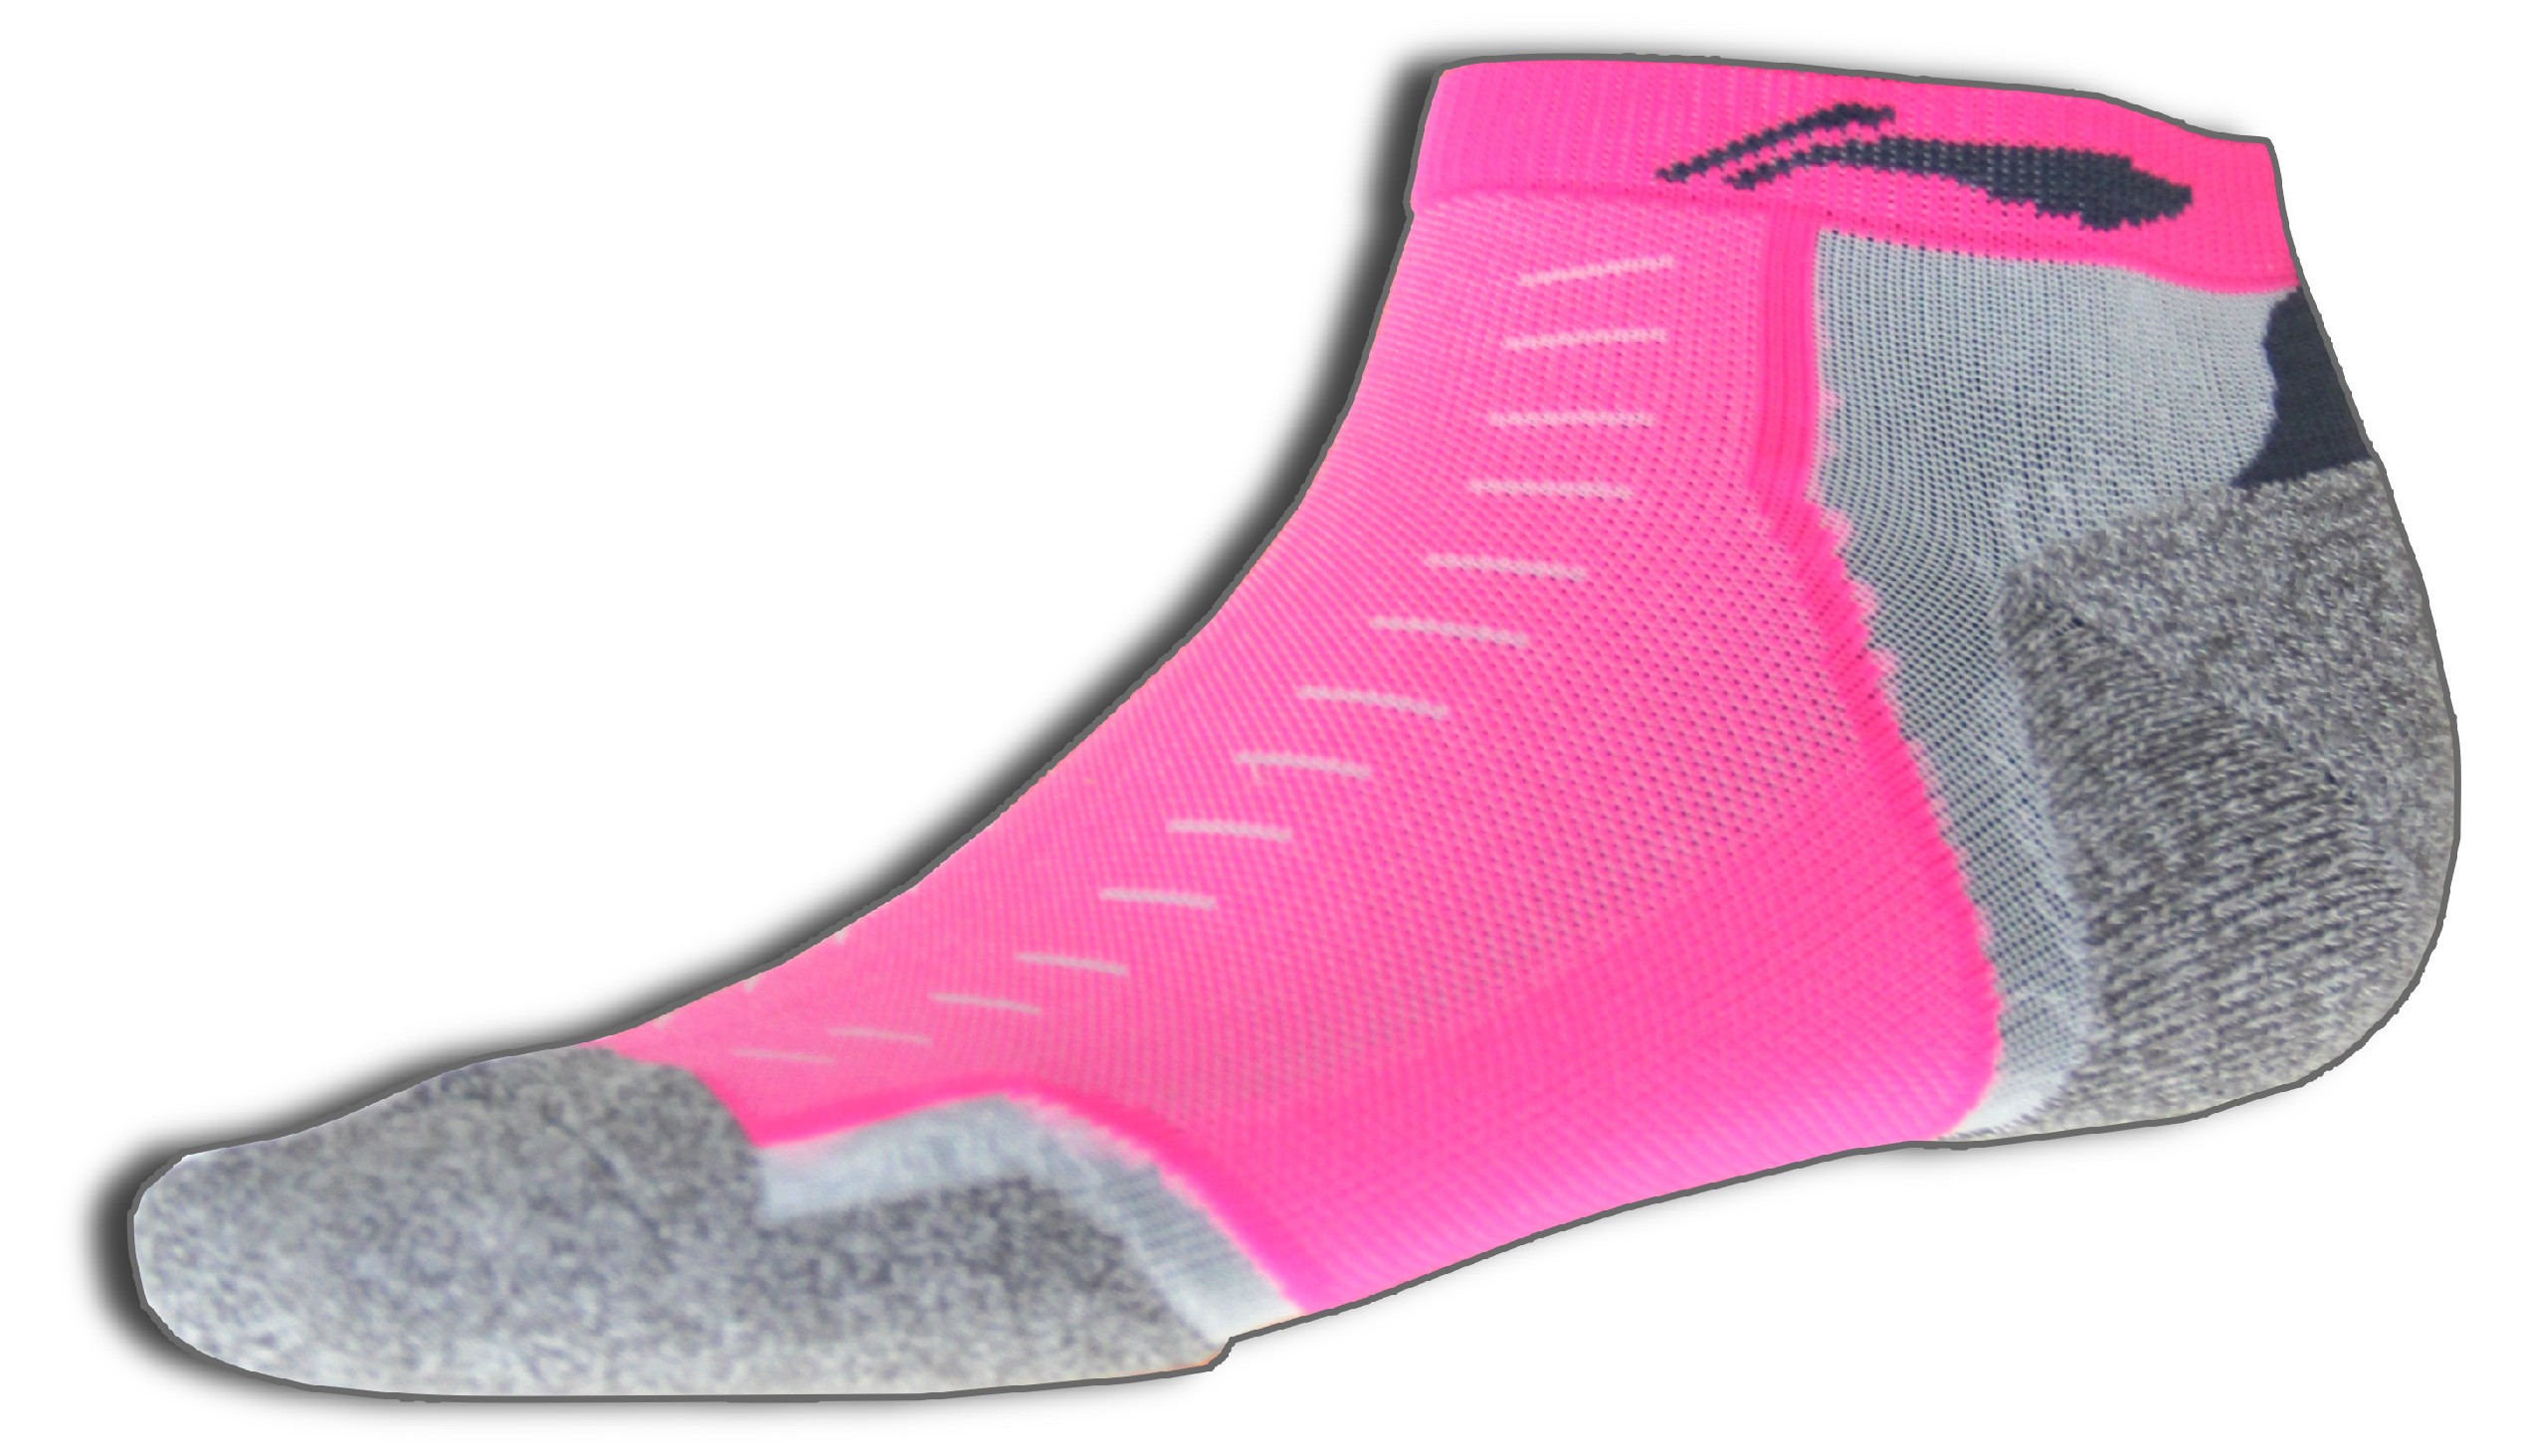 Sportovní ponožky LI-NING BITE 2016 Dámské - Flash PINK